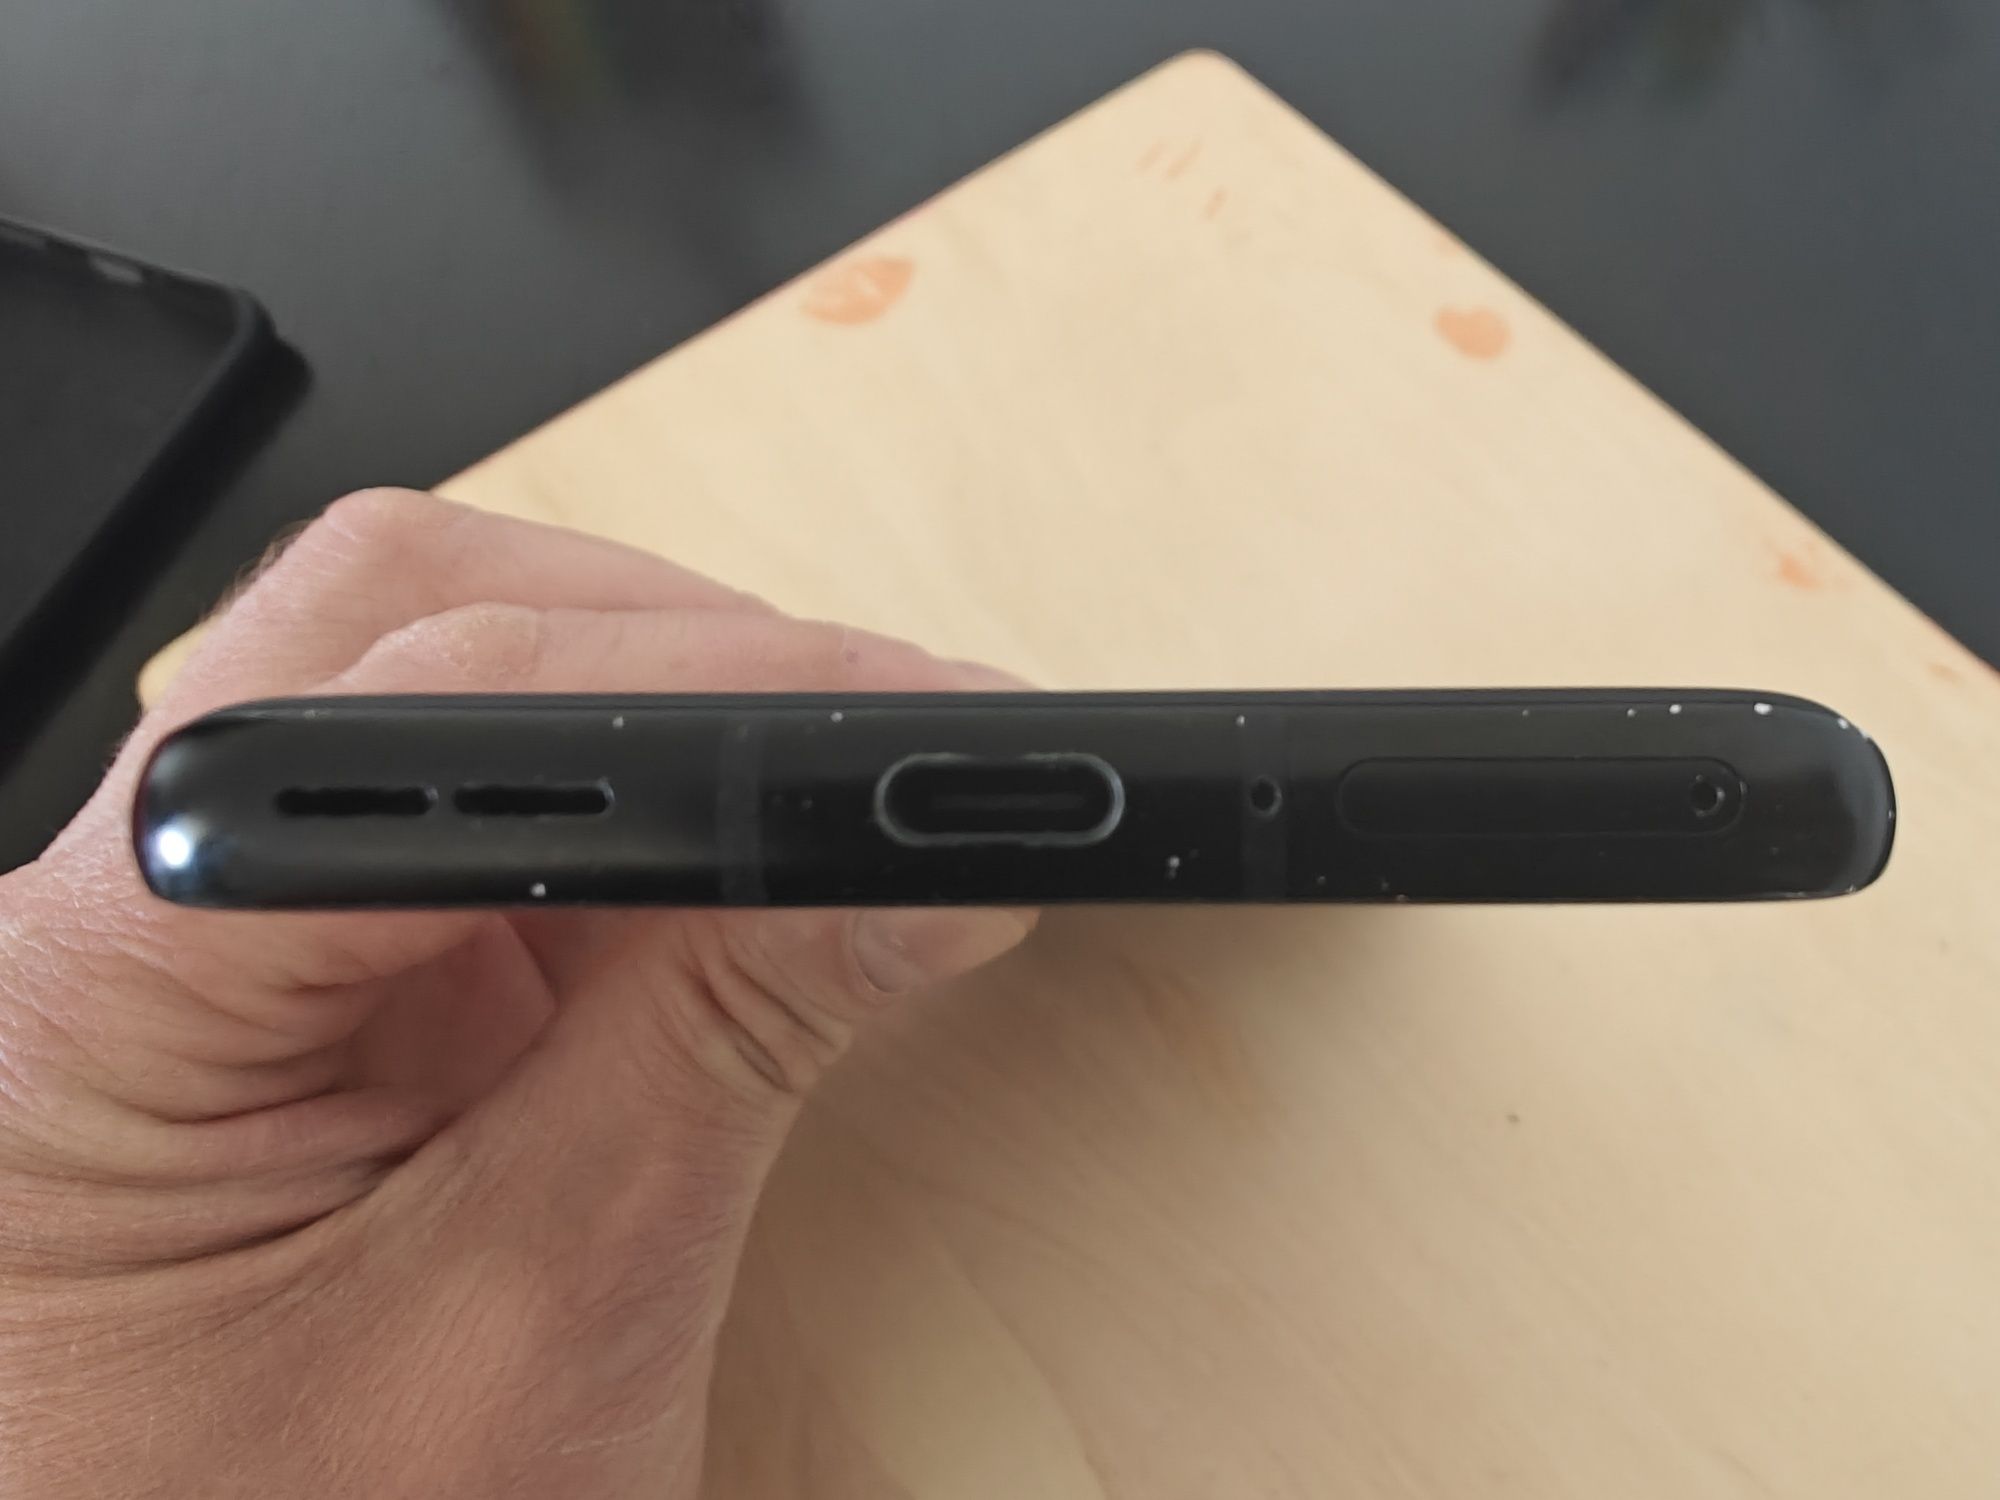 OnePlus 9Pro 5G 8/256 Black